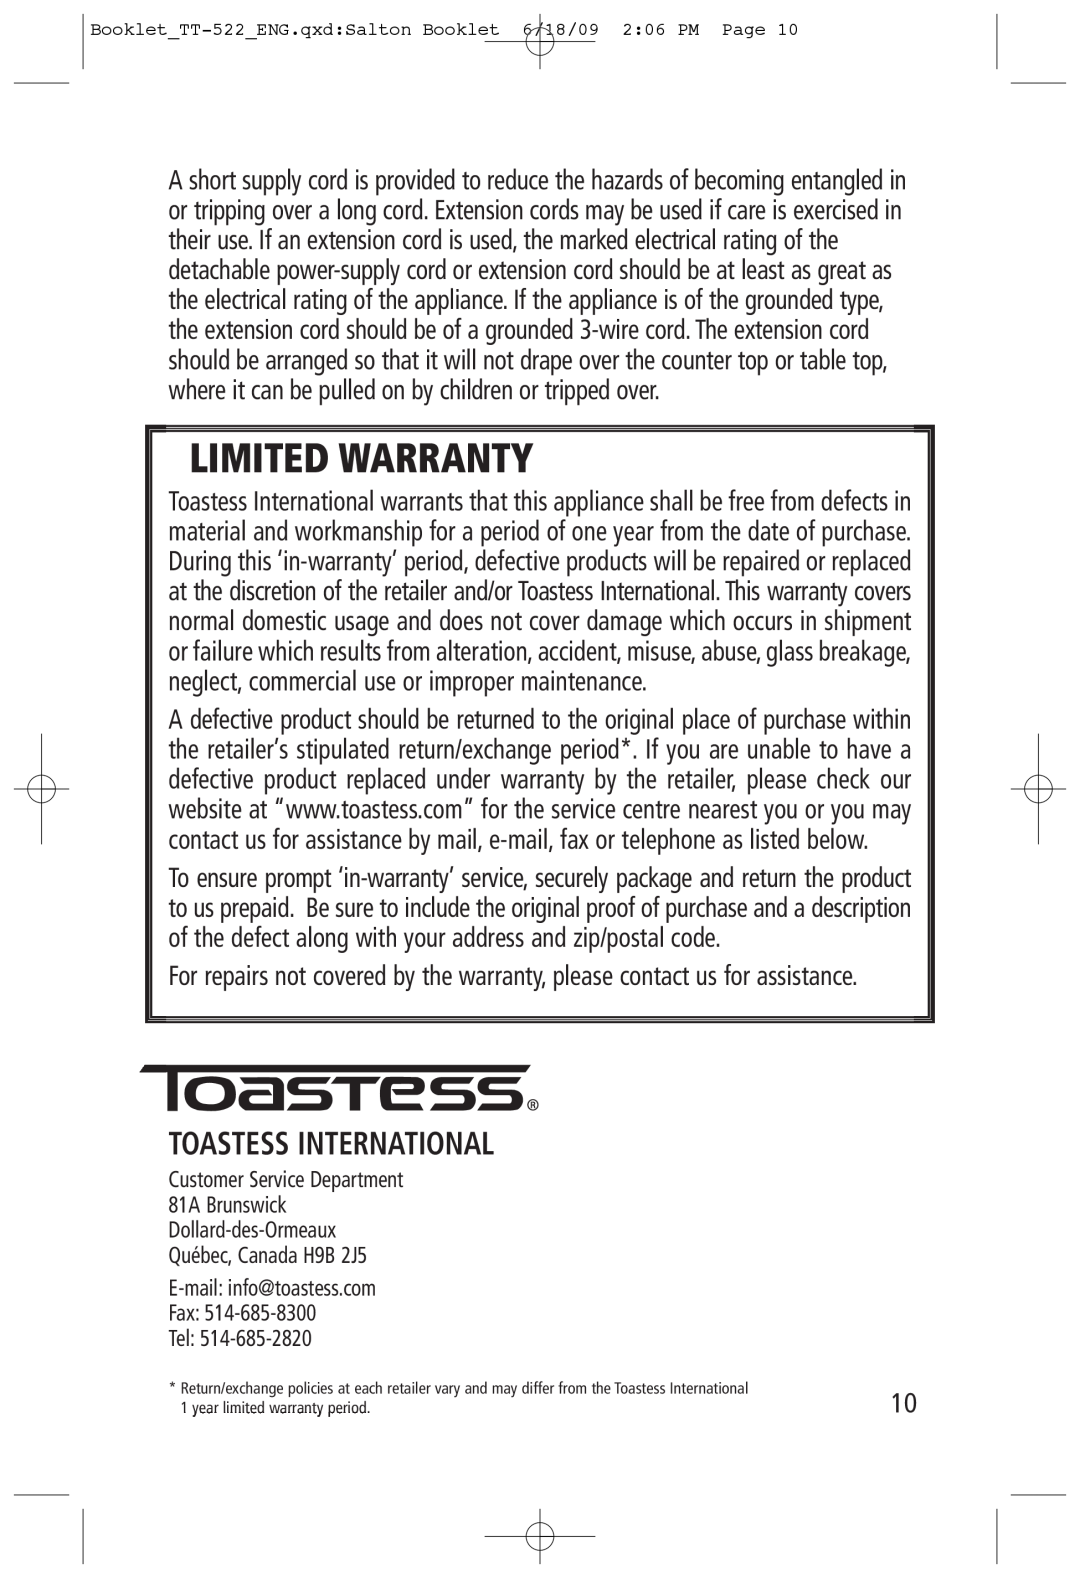 Toastess tt-522 manual Toastess International, Limited Warranty 